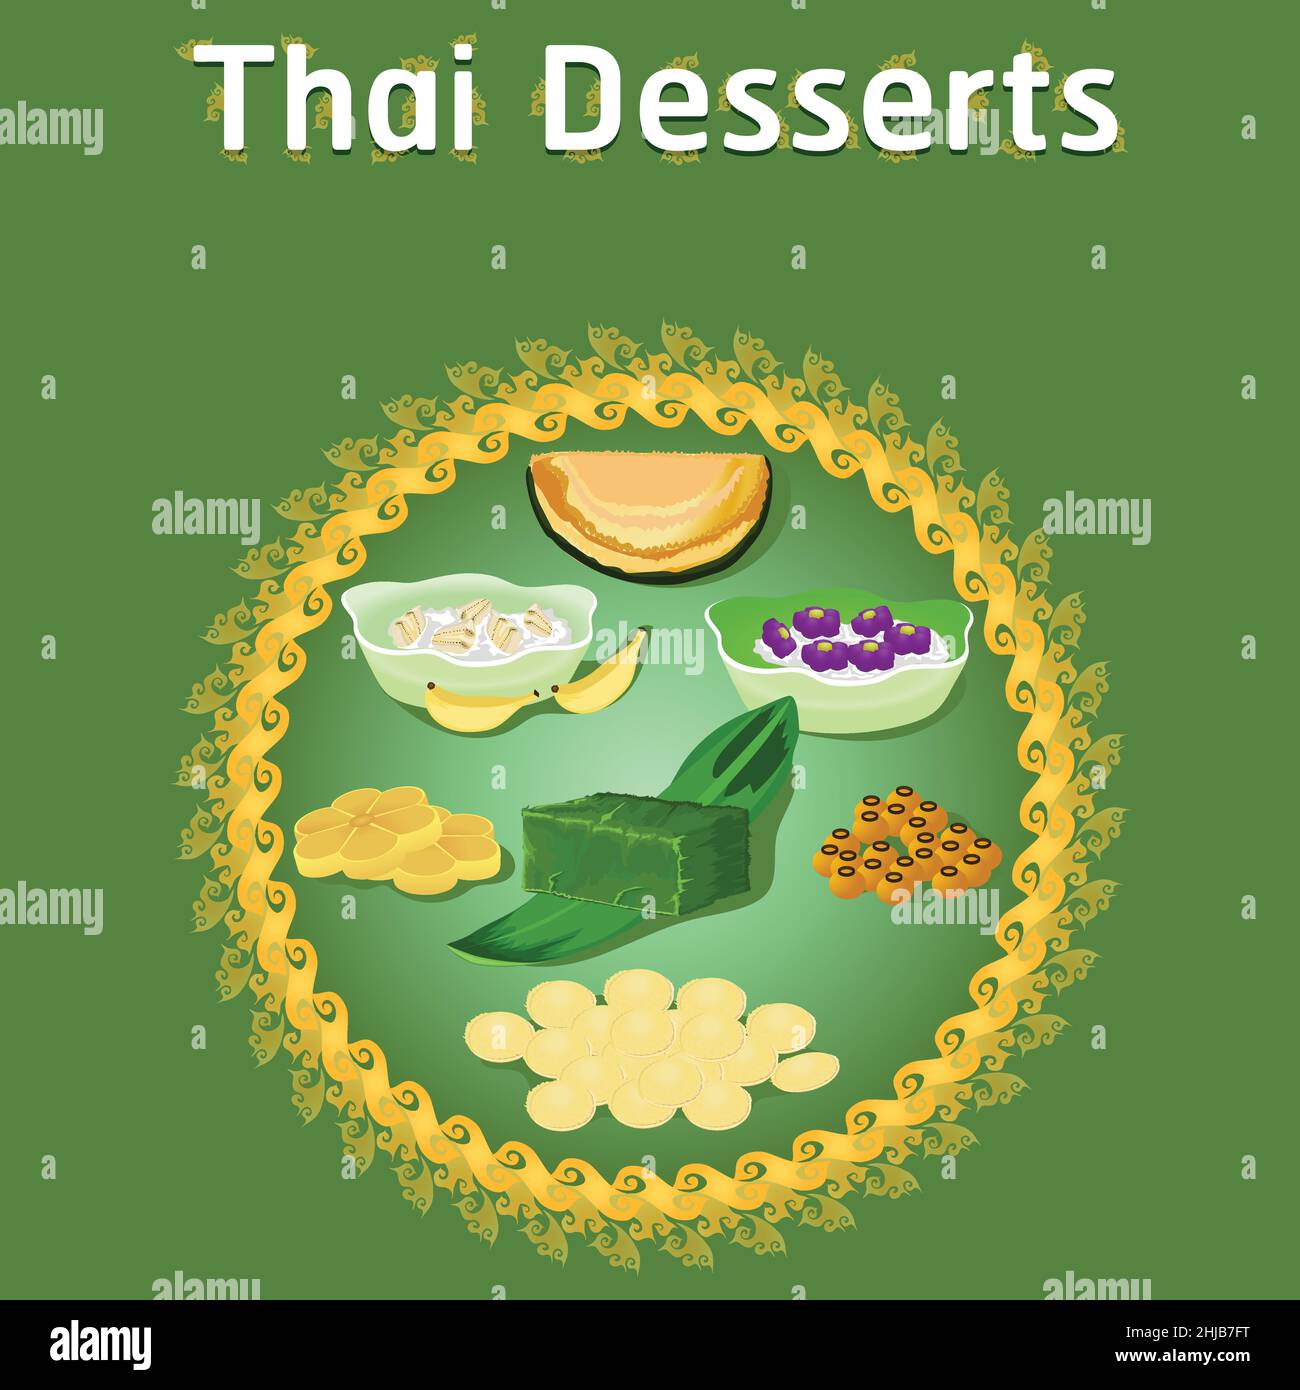 thai khanom Desserts süß Zucker lecker Wanne tim Banane Kokos lecker Kastanie hausgemachte Vektor jetzt herunterladen Illustration Stock Vektor